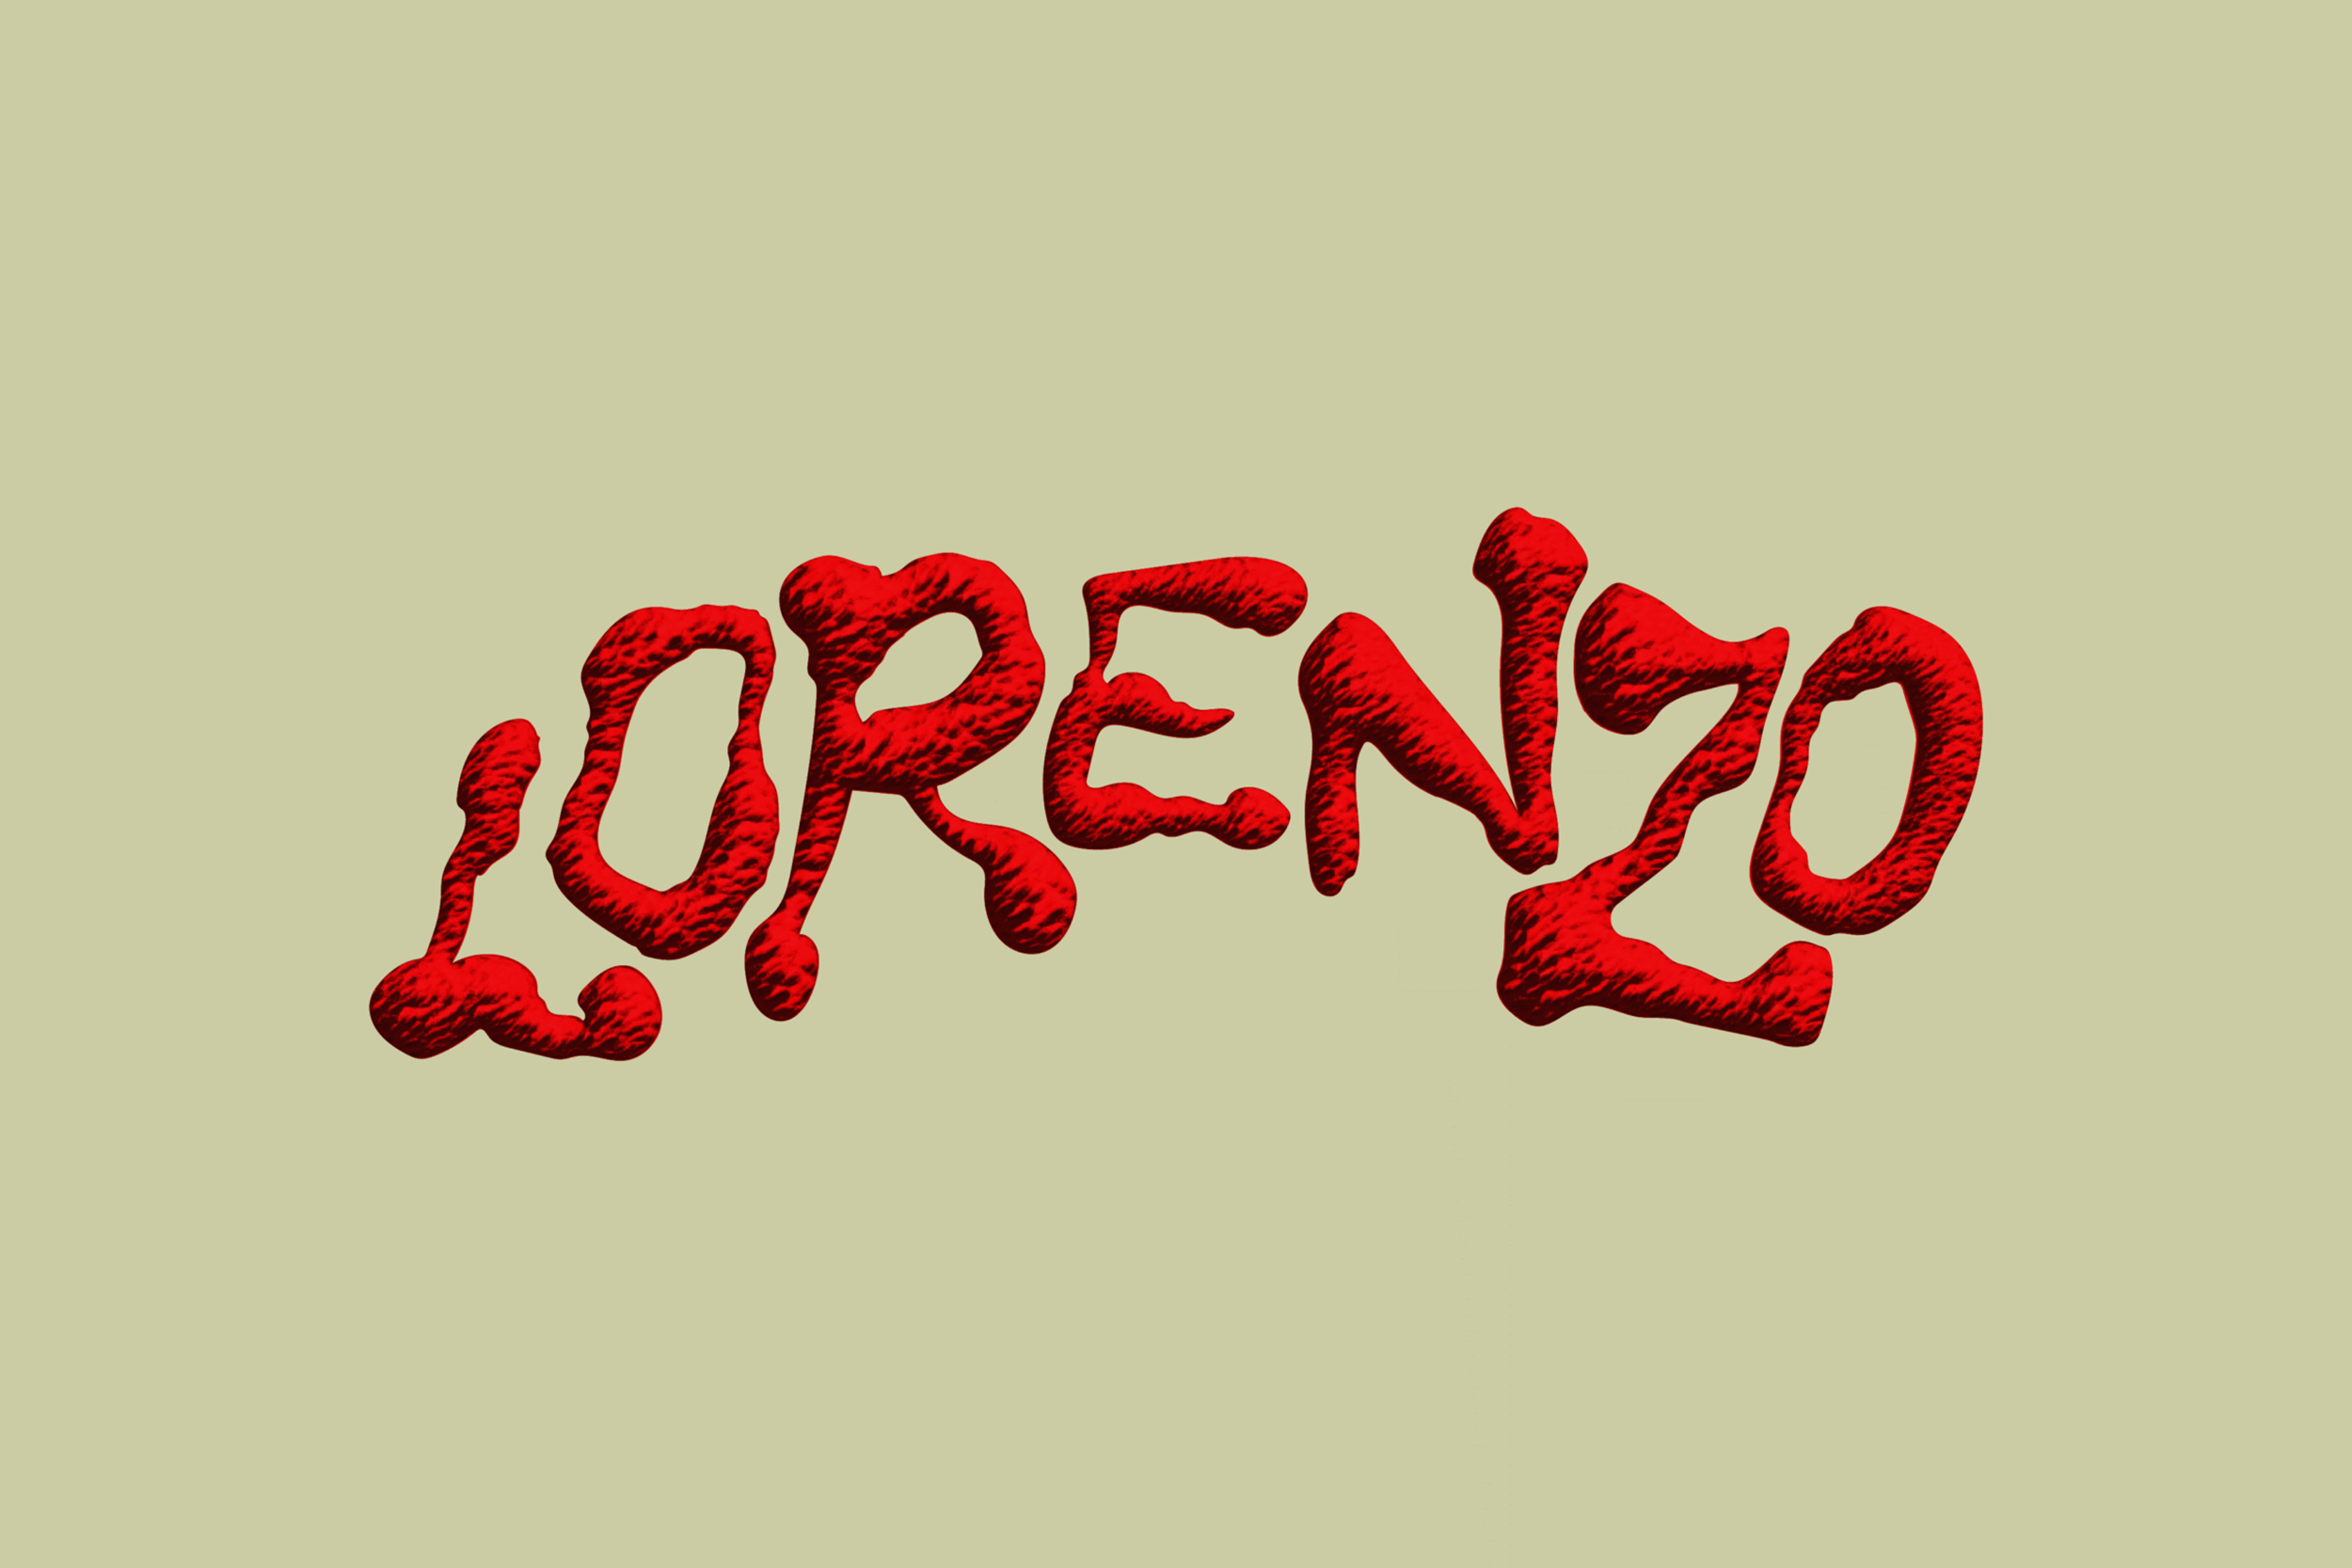 Lorenzo — Coming soon